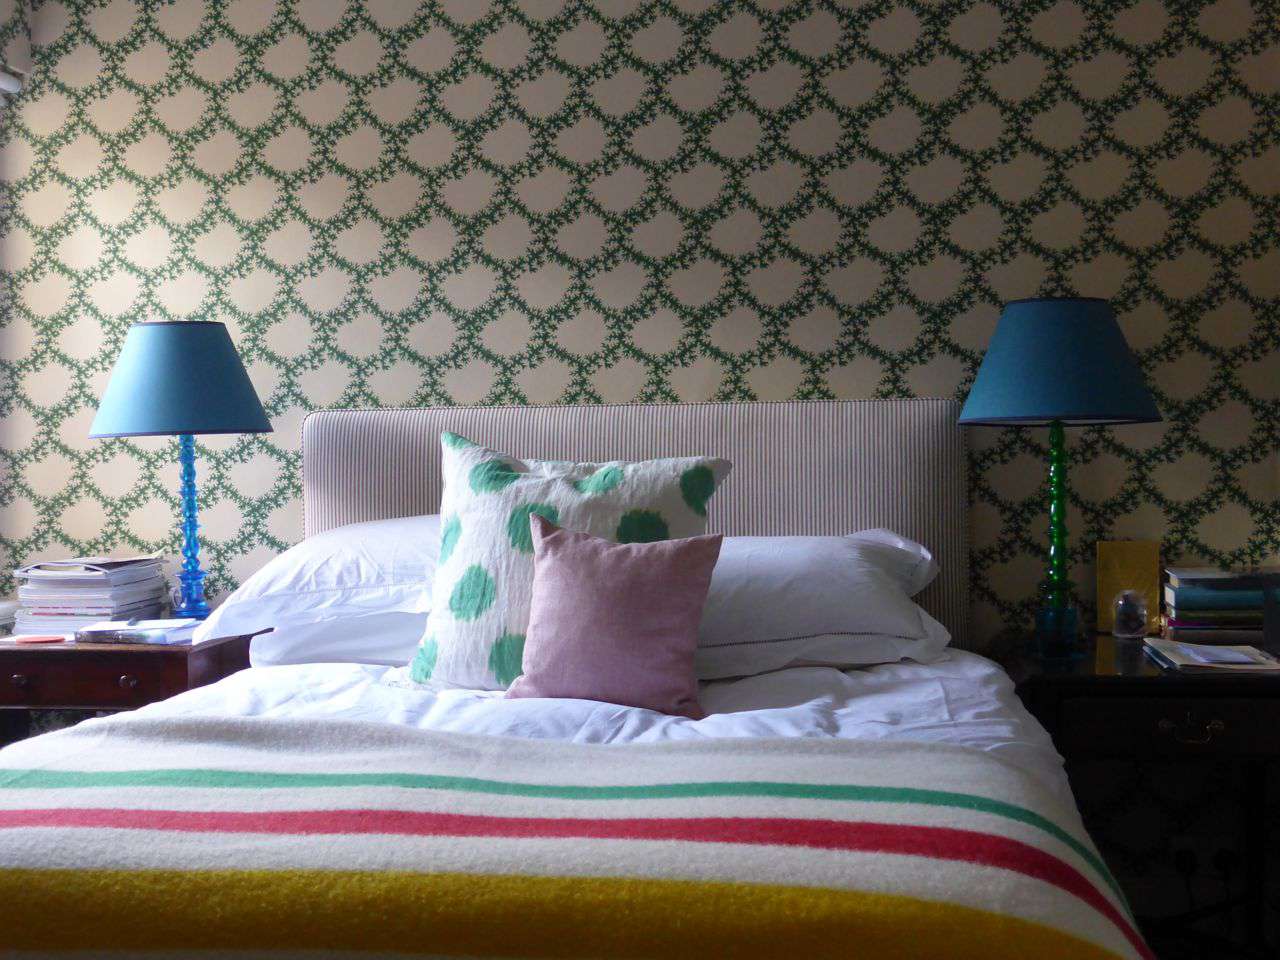 estampado y color animan un dormitorio pequeño